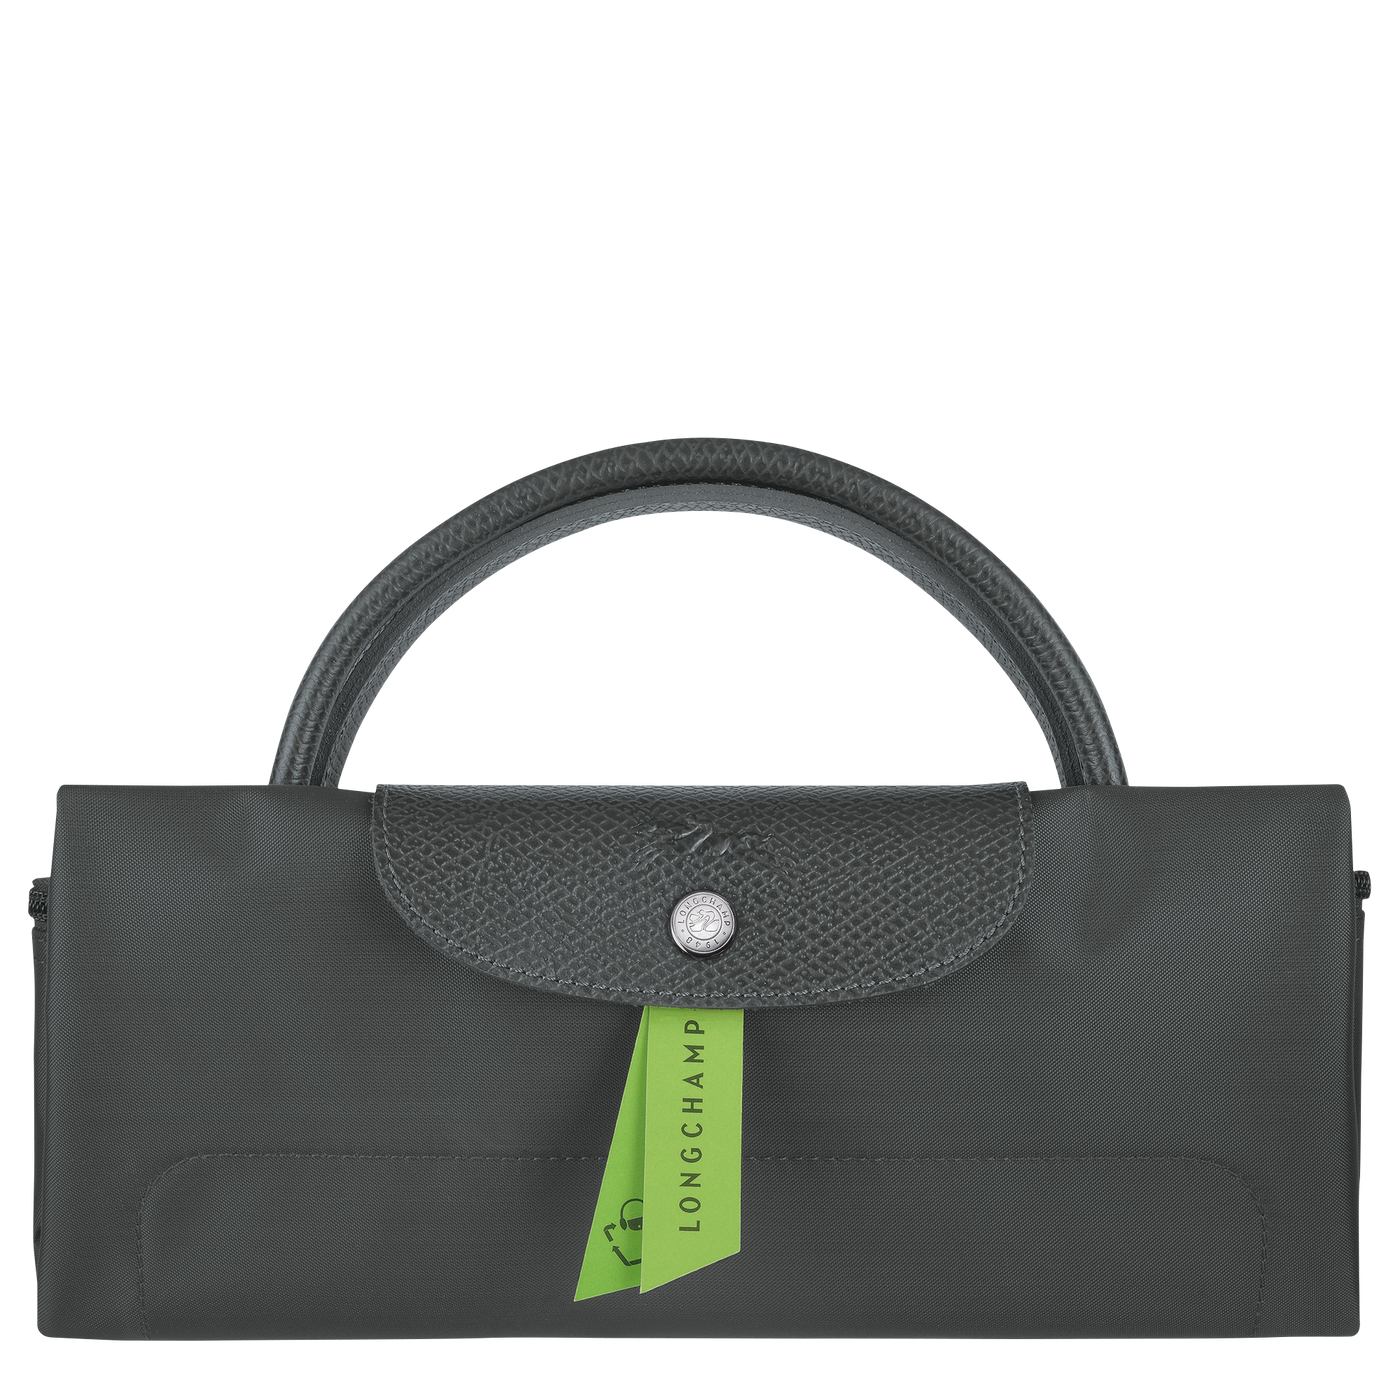 Le Pliage Green Travel Bag L  - 1624919